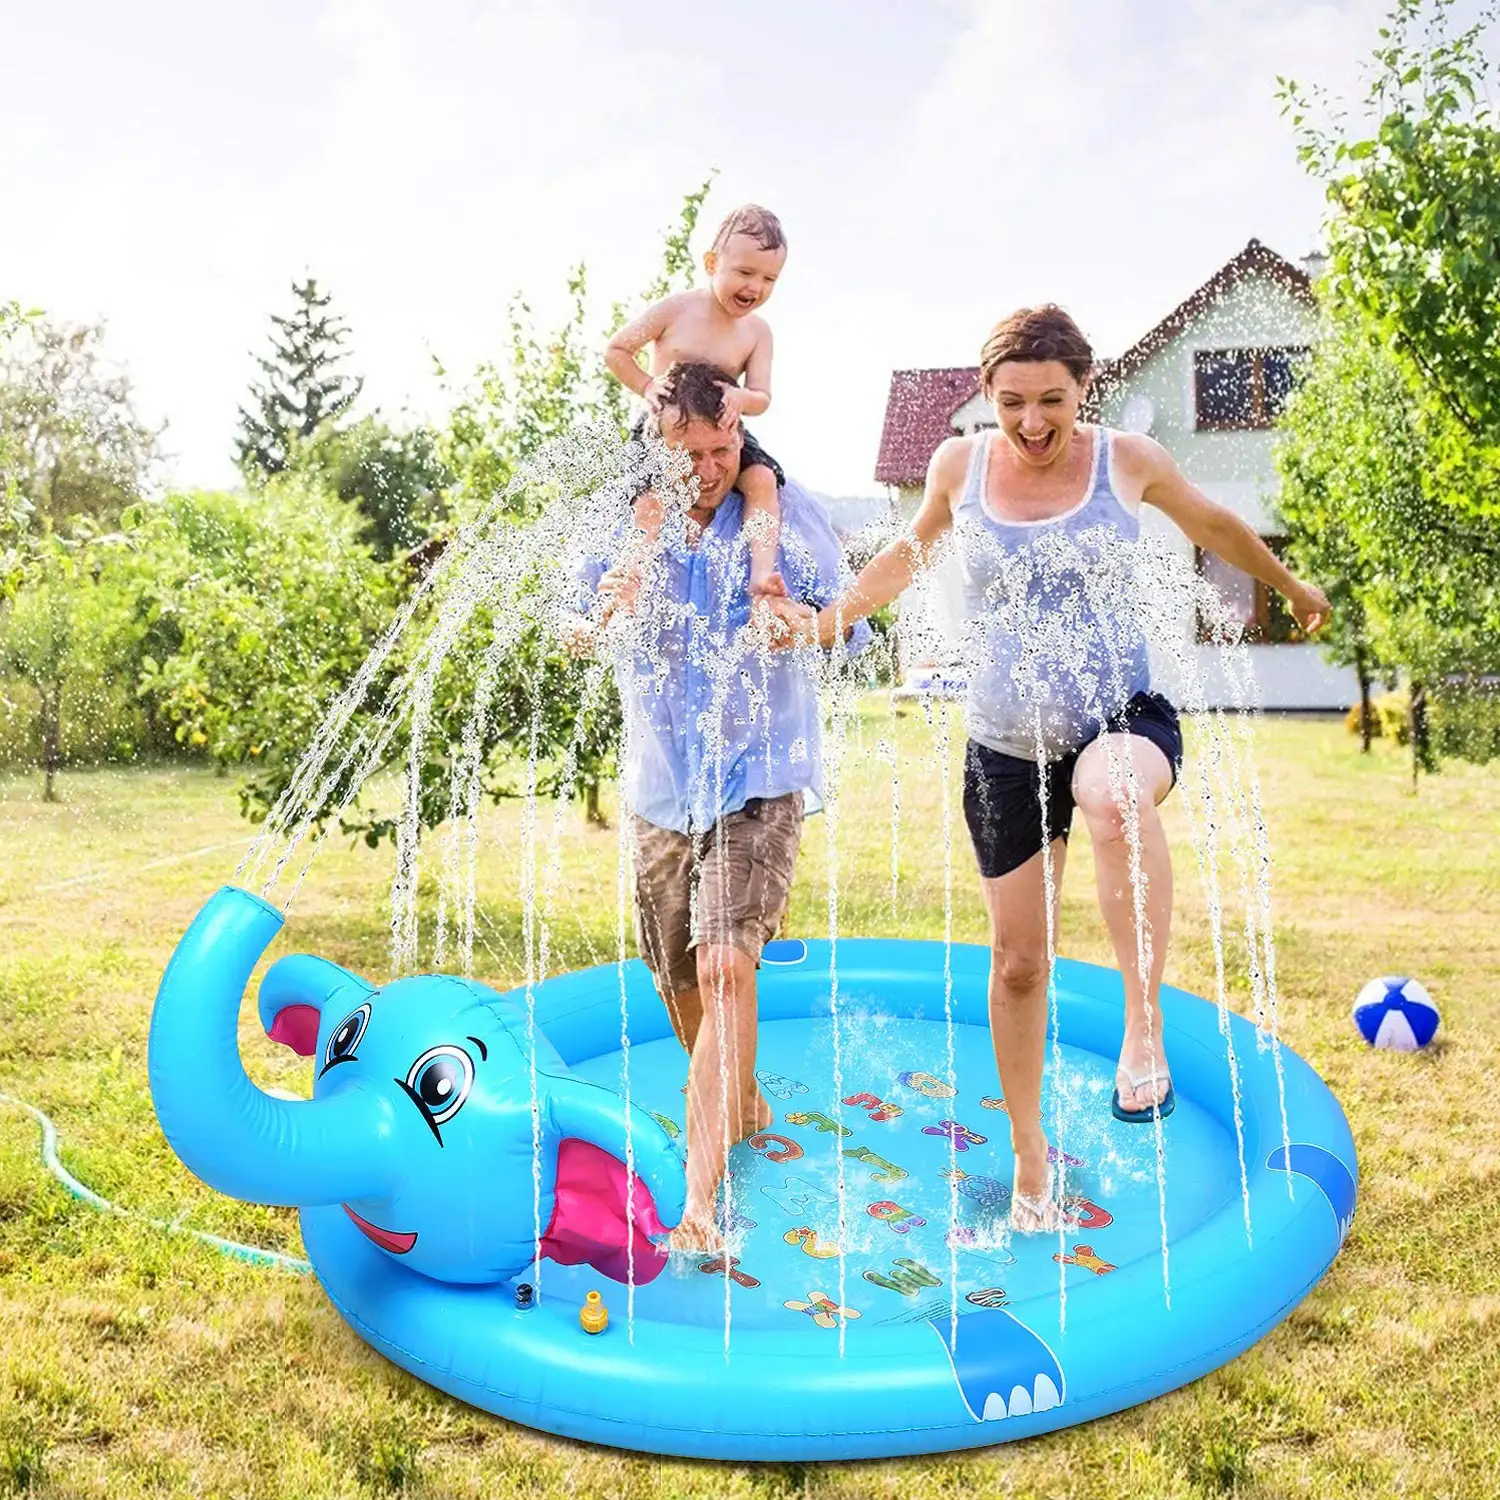 Splash Pad. Juguete inflable y aspersor de agua, divertido juego para niños. 200cm. Diseño elefante con trompa aspersor.